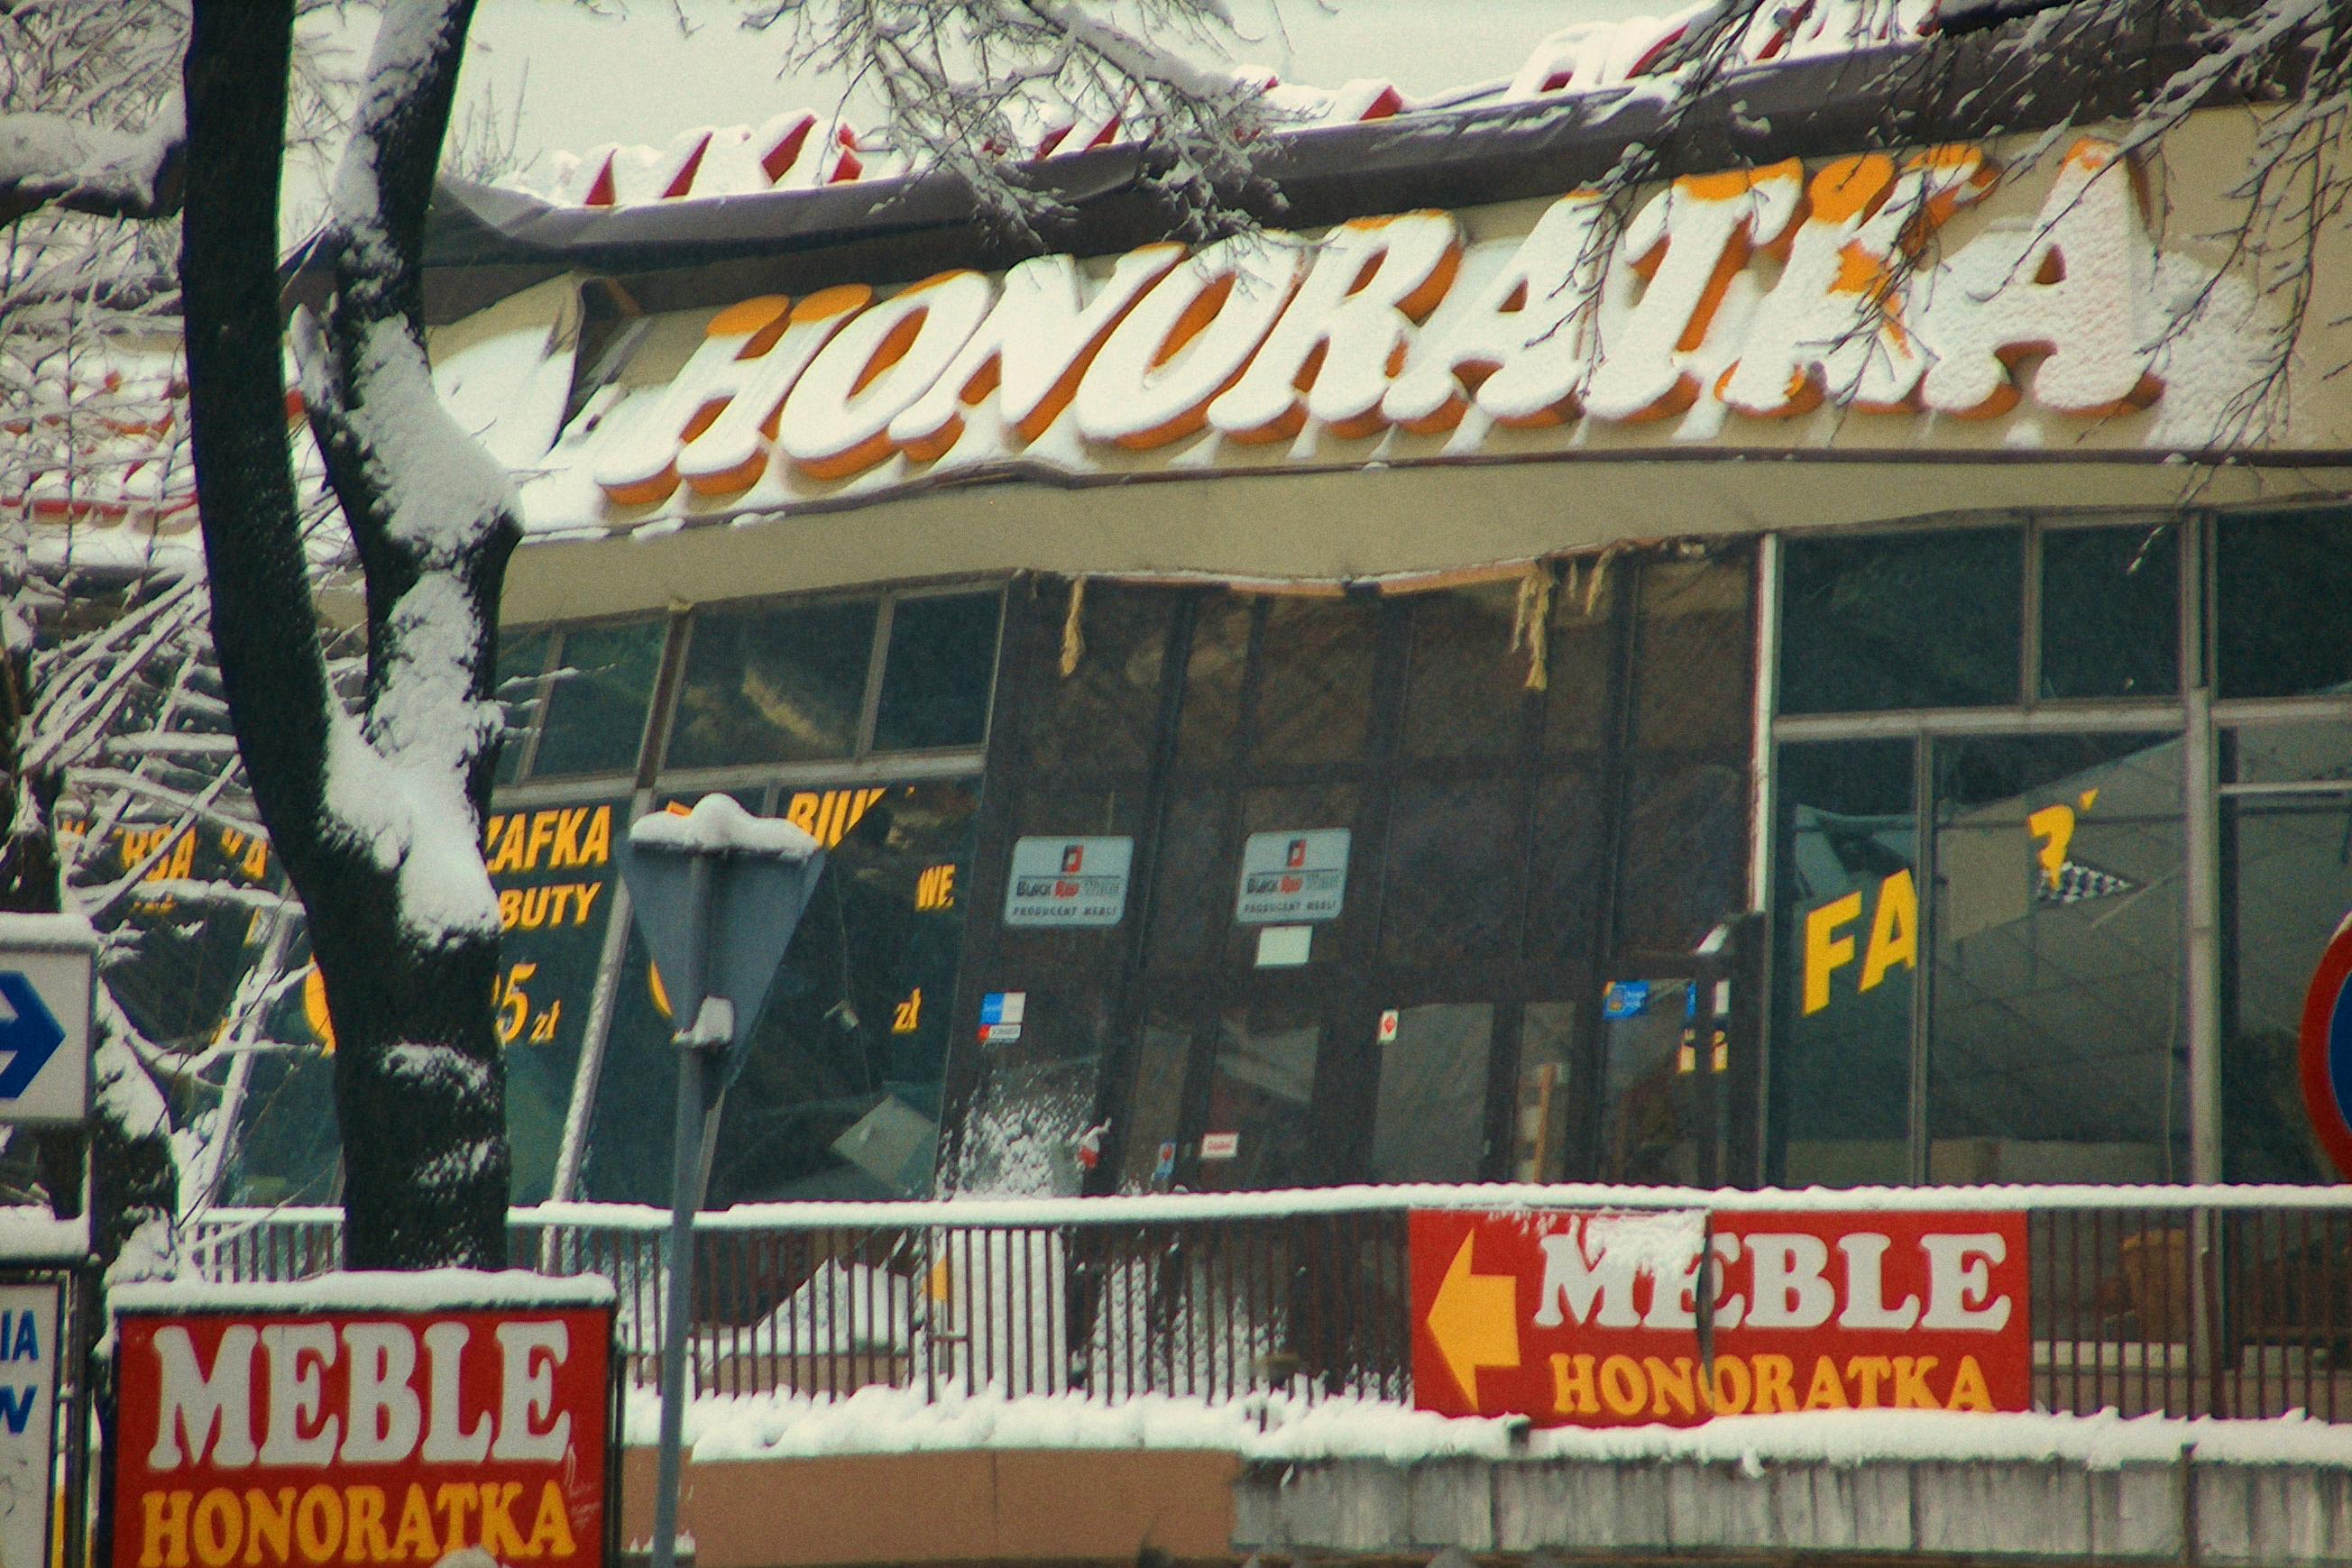 15 lat temu : 3 stycznia 2006 pod ciężarem śniegu zapadł się dach pawilonu handlowego Honoratka w Świętochłowicach.